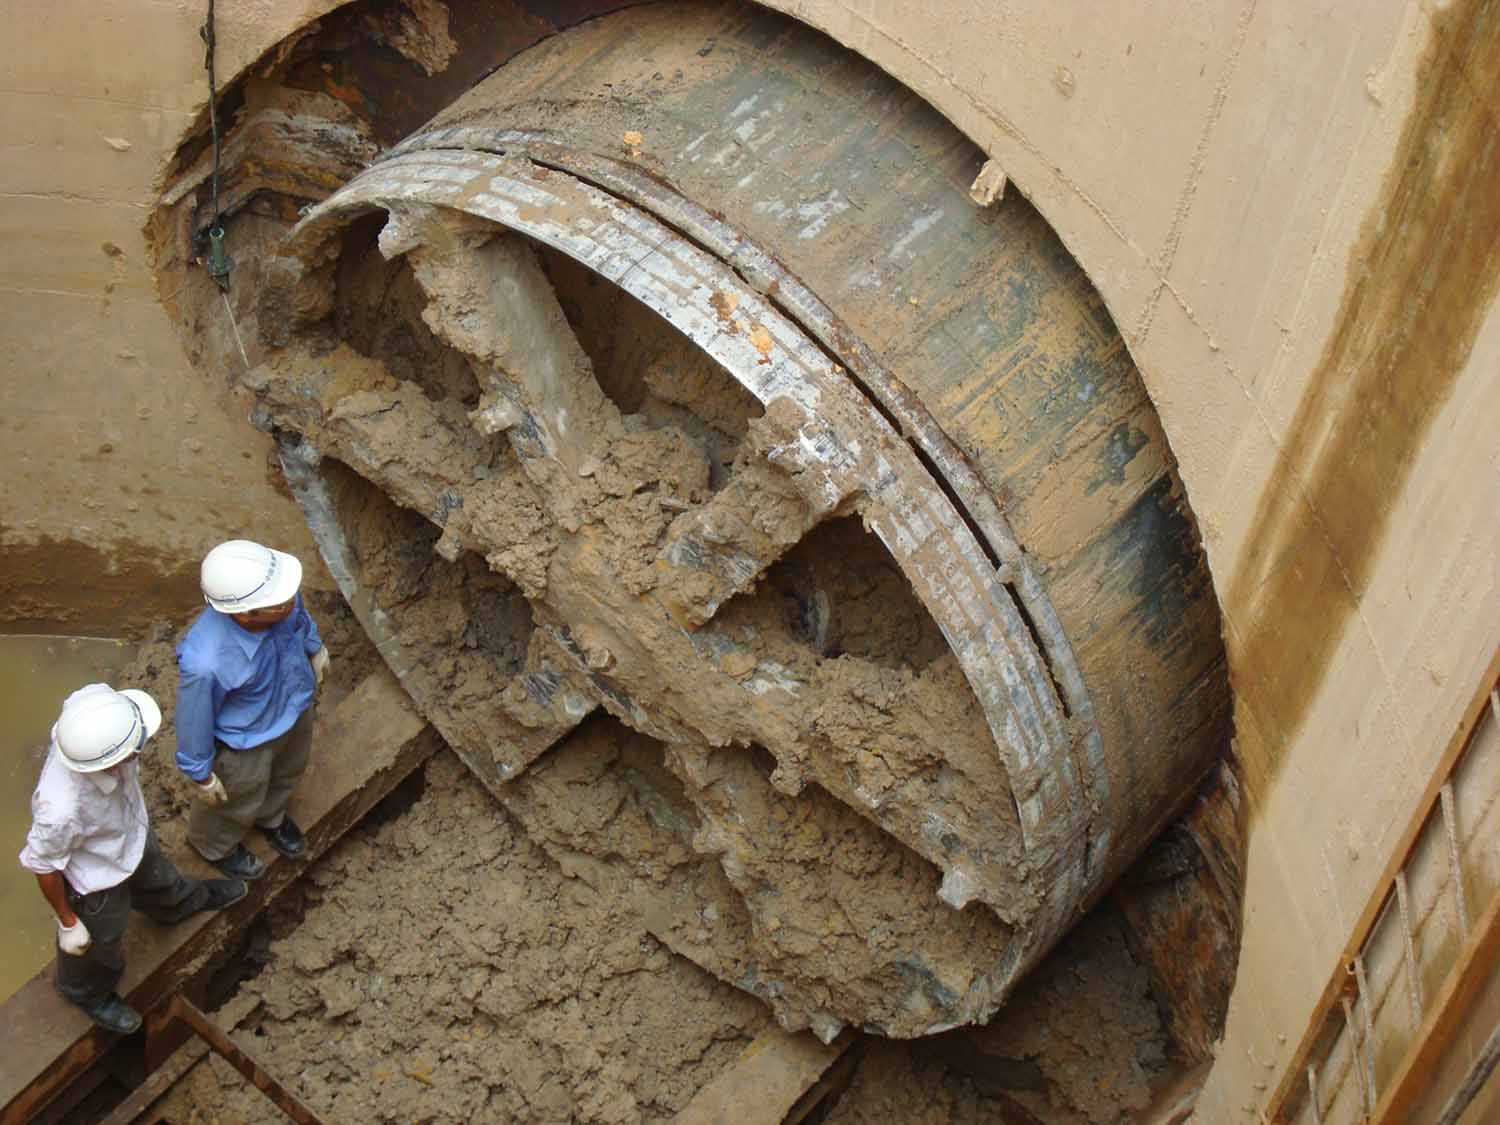 长沙荣康管道工程有限公司是一家专业从事非开挖顶管施工的企业